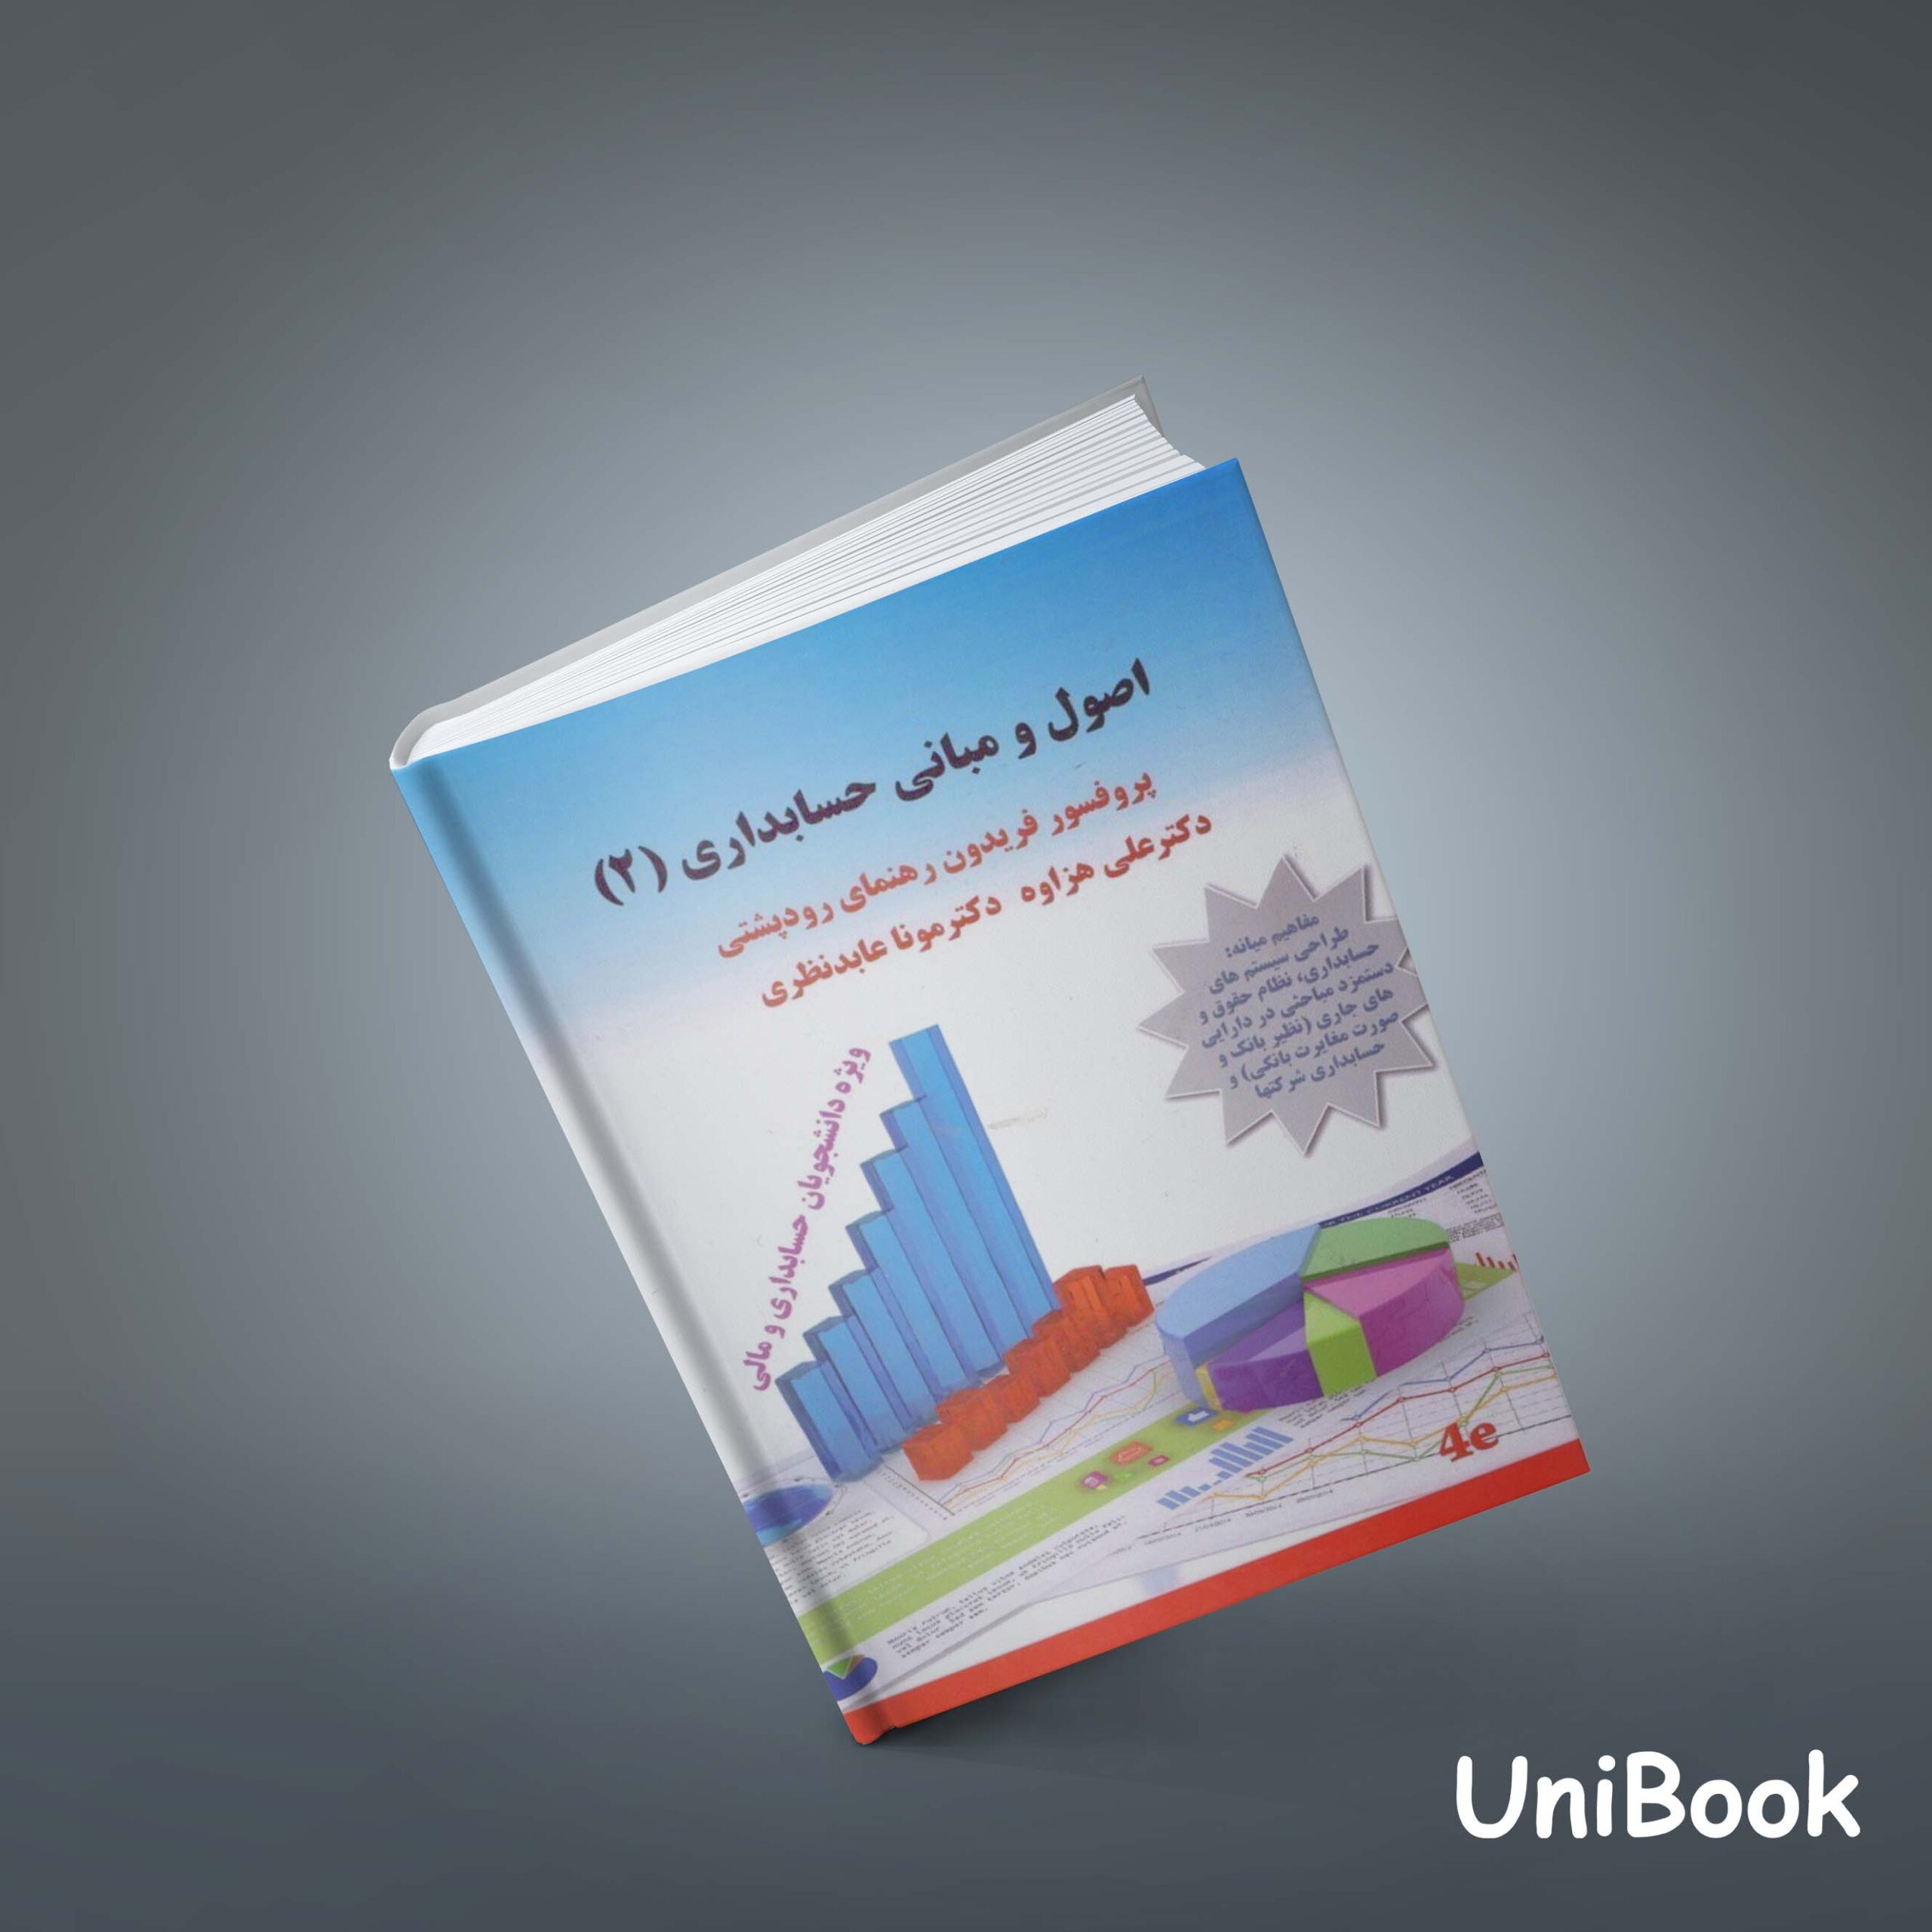 کتاب اصول و مبانی حسابداری (2) :مفاهیم میانه: طراحي سيستمهاي حسابداری